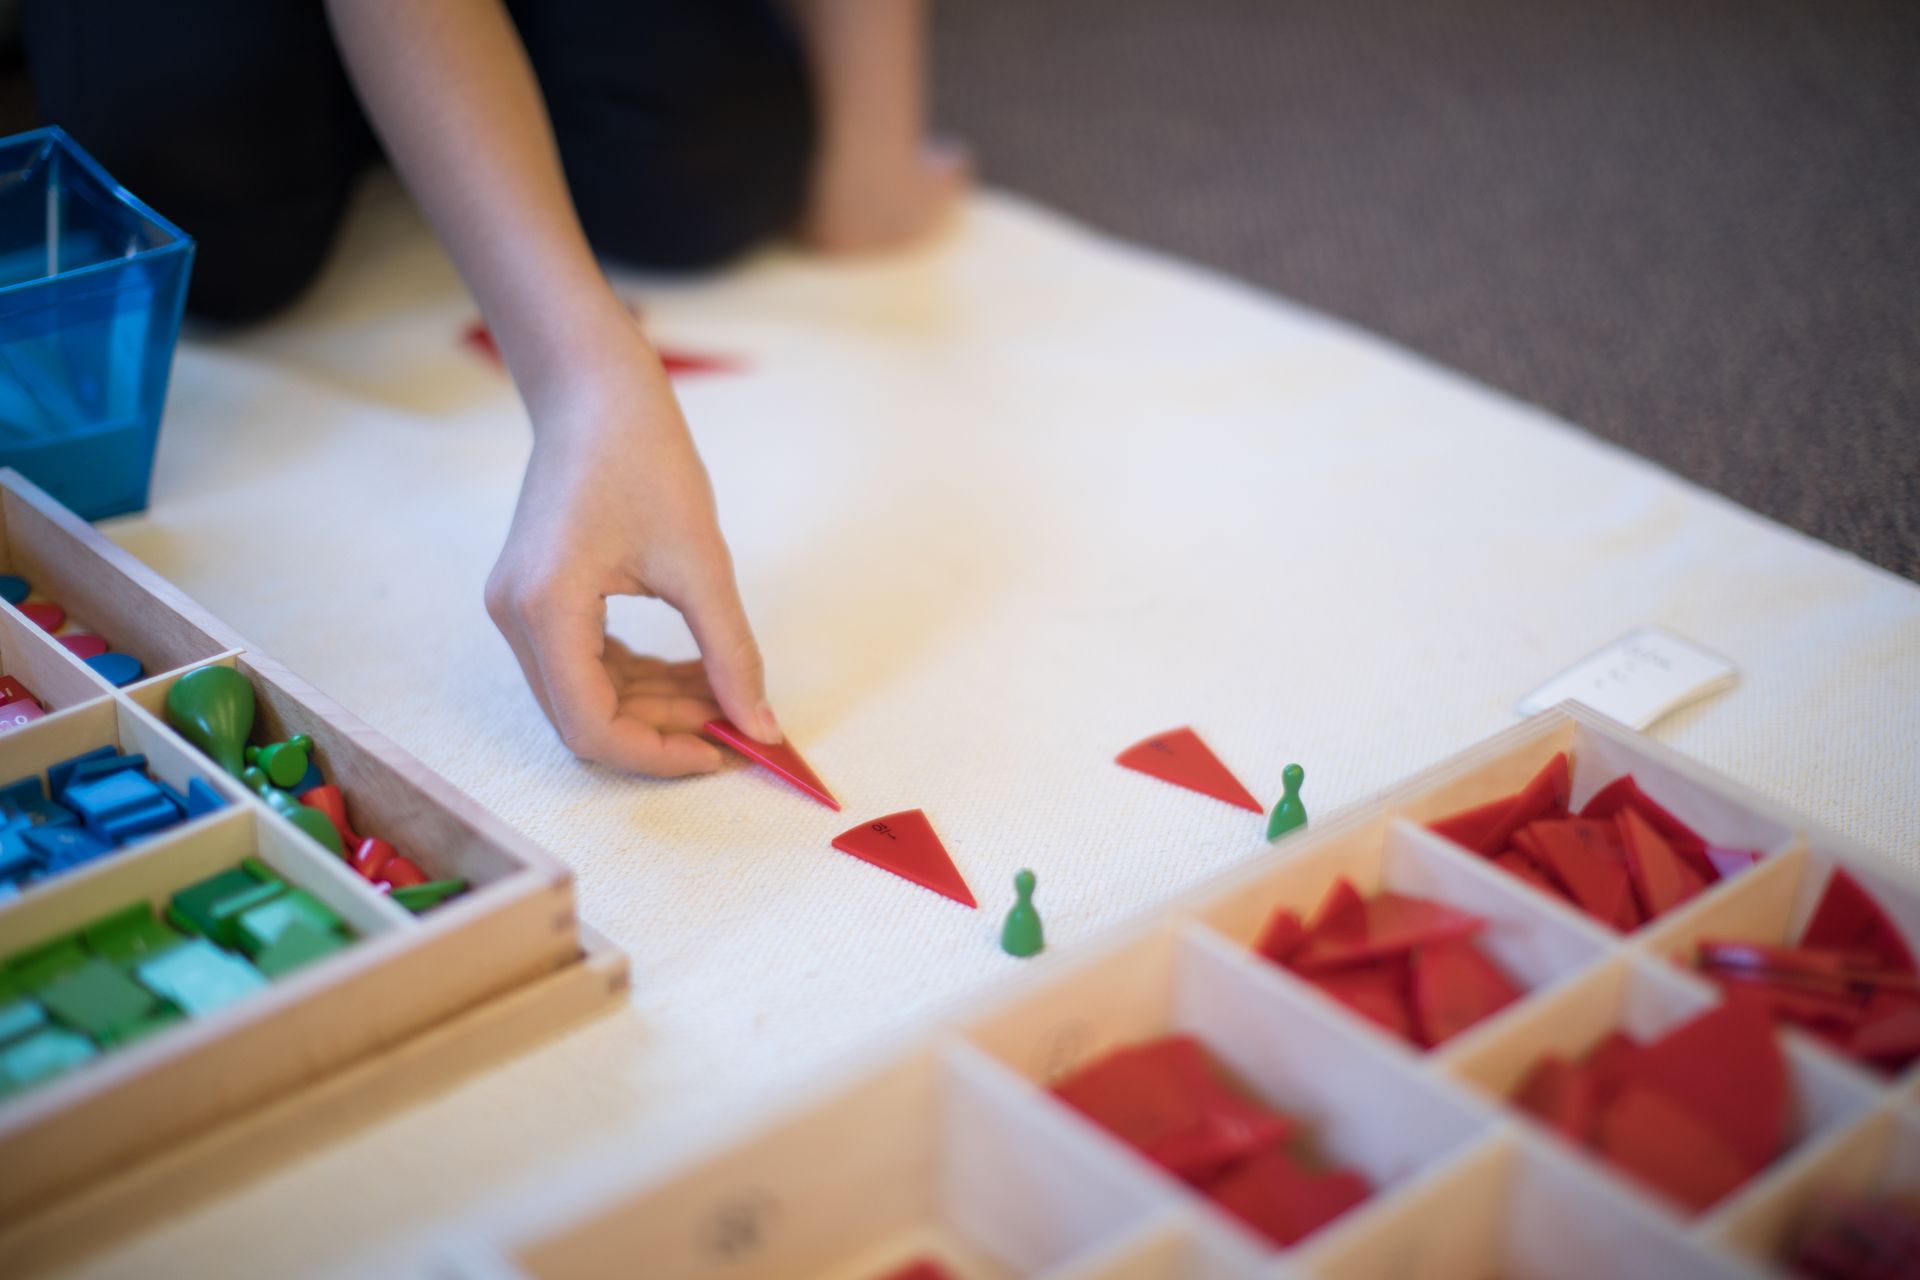 Montessori child working with math materials